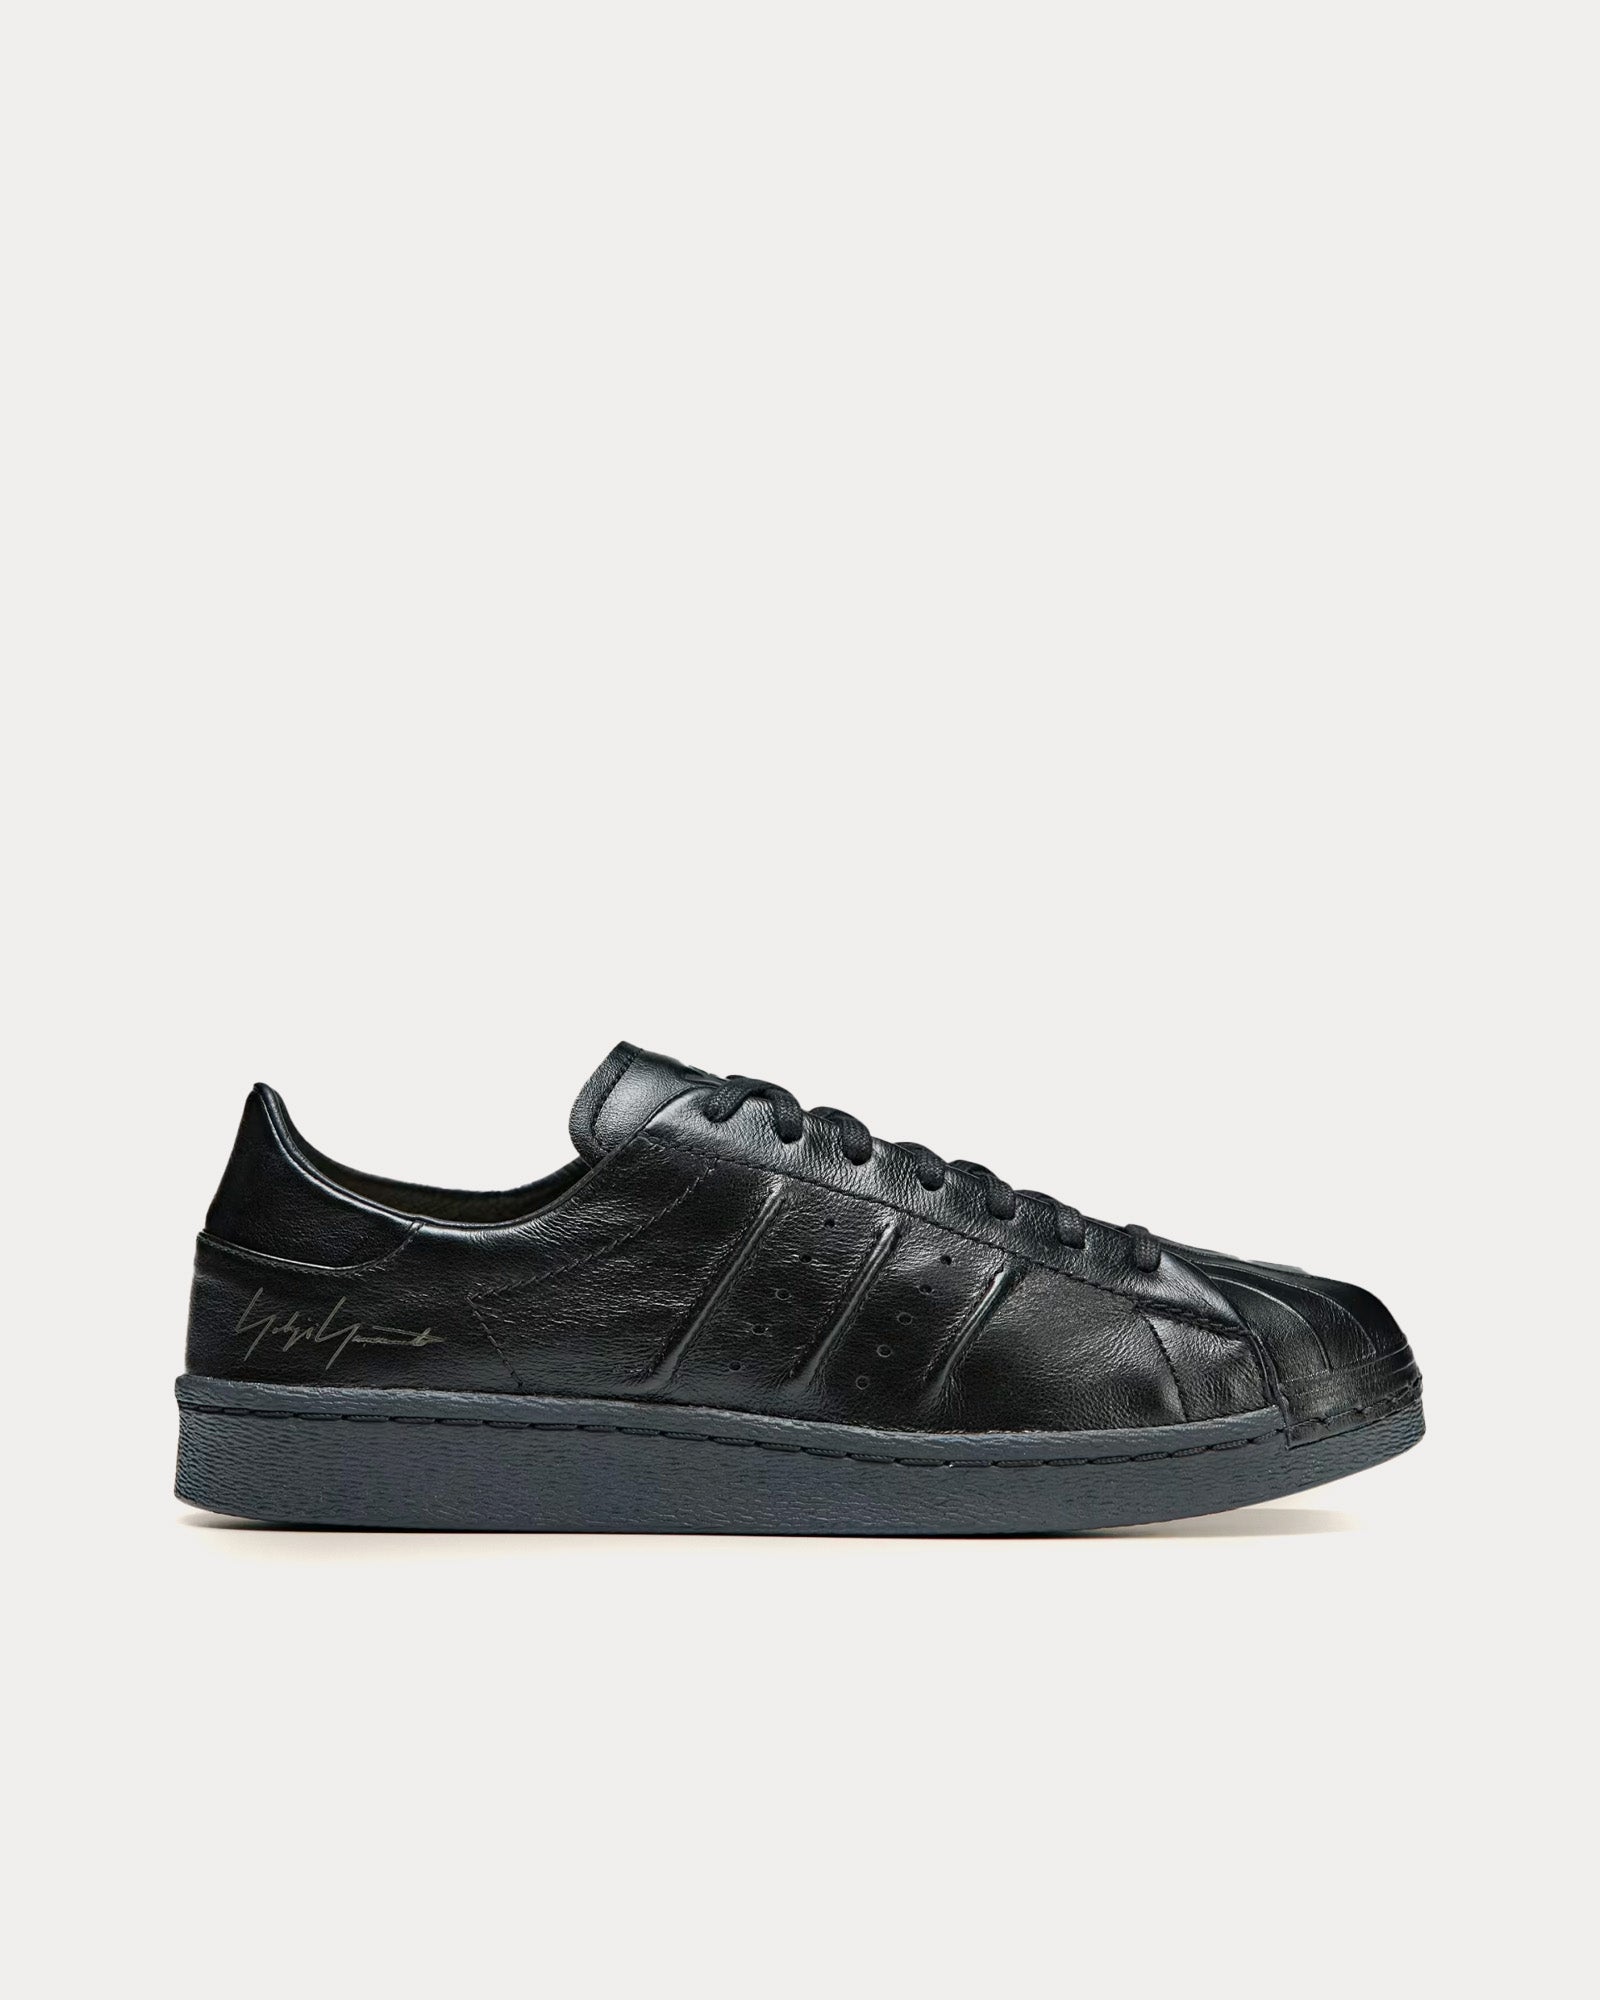 Y-3 - Superstar Leather Black / Black / Black Low Top Sneakers